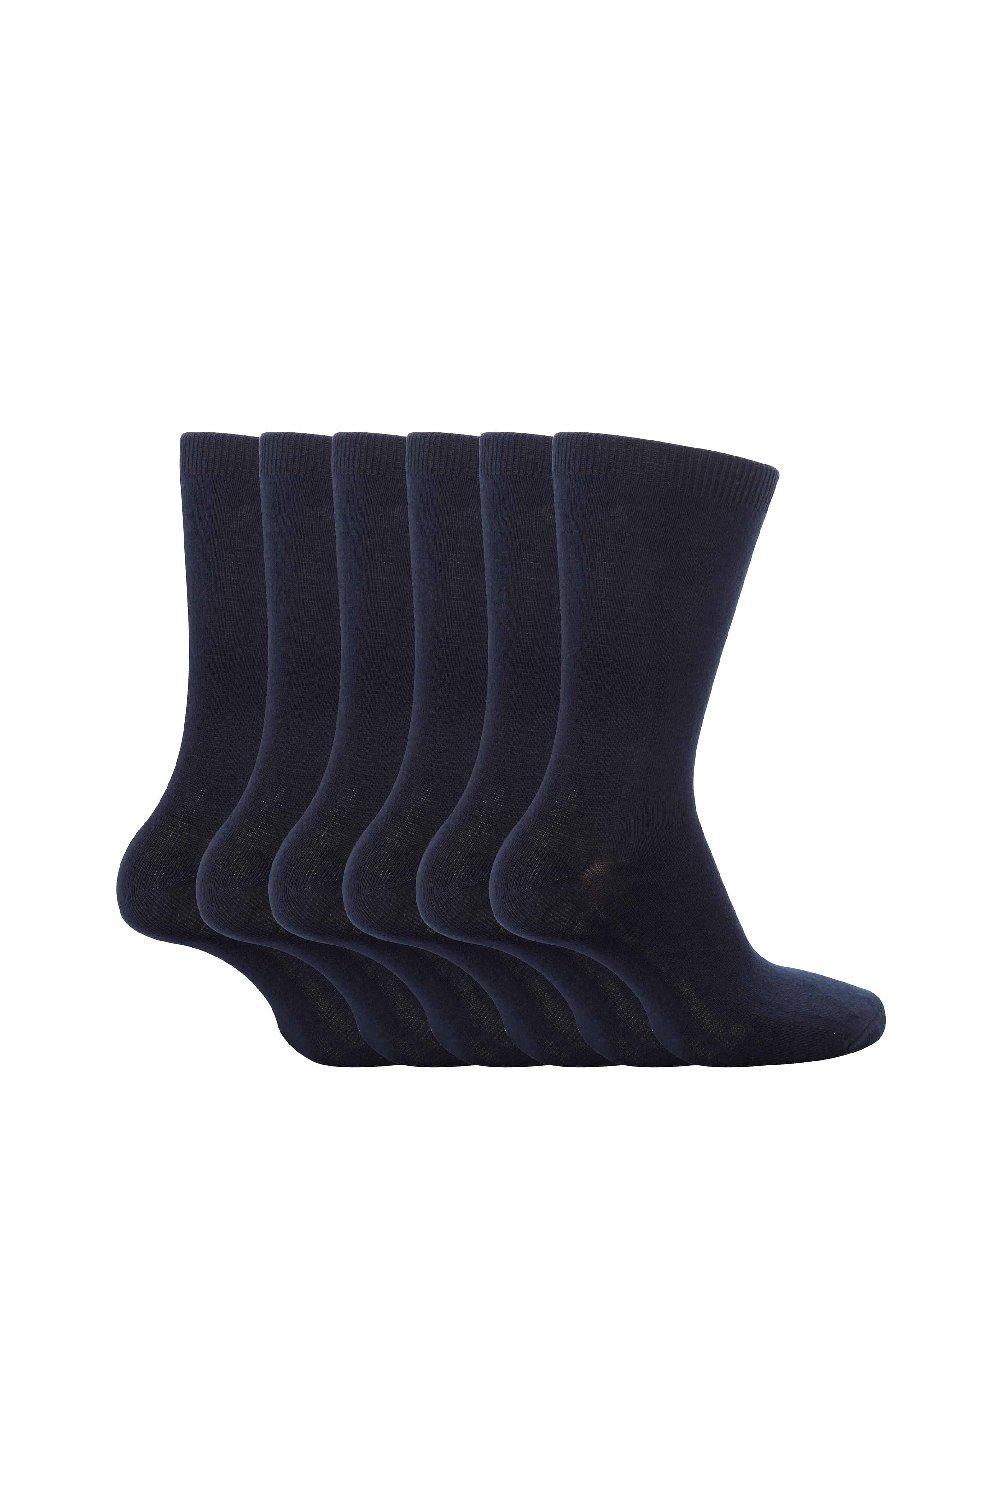 6 пар простых школьных мягких хлопковых носков Sock Snob, синий